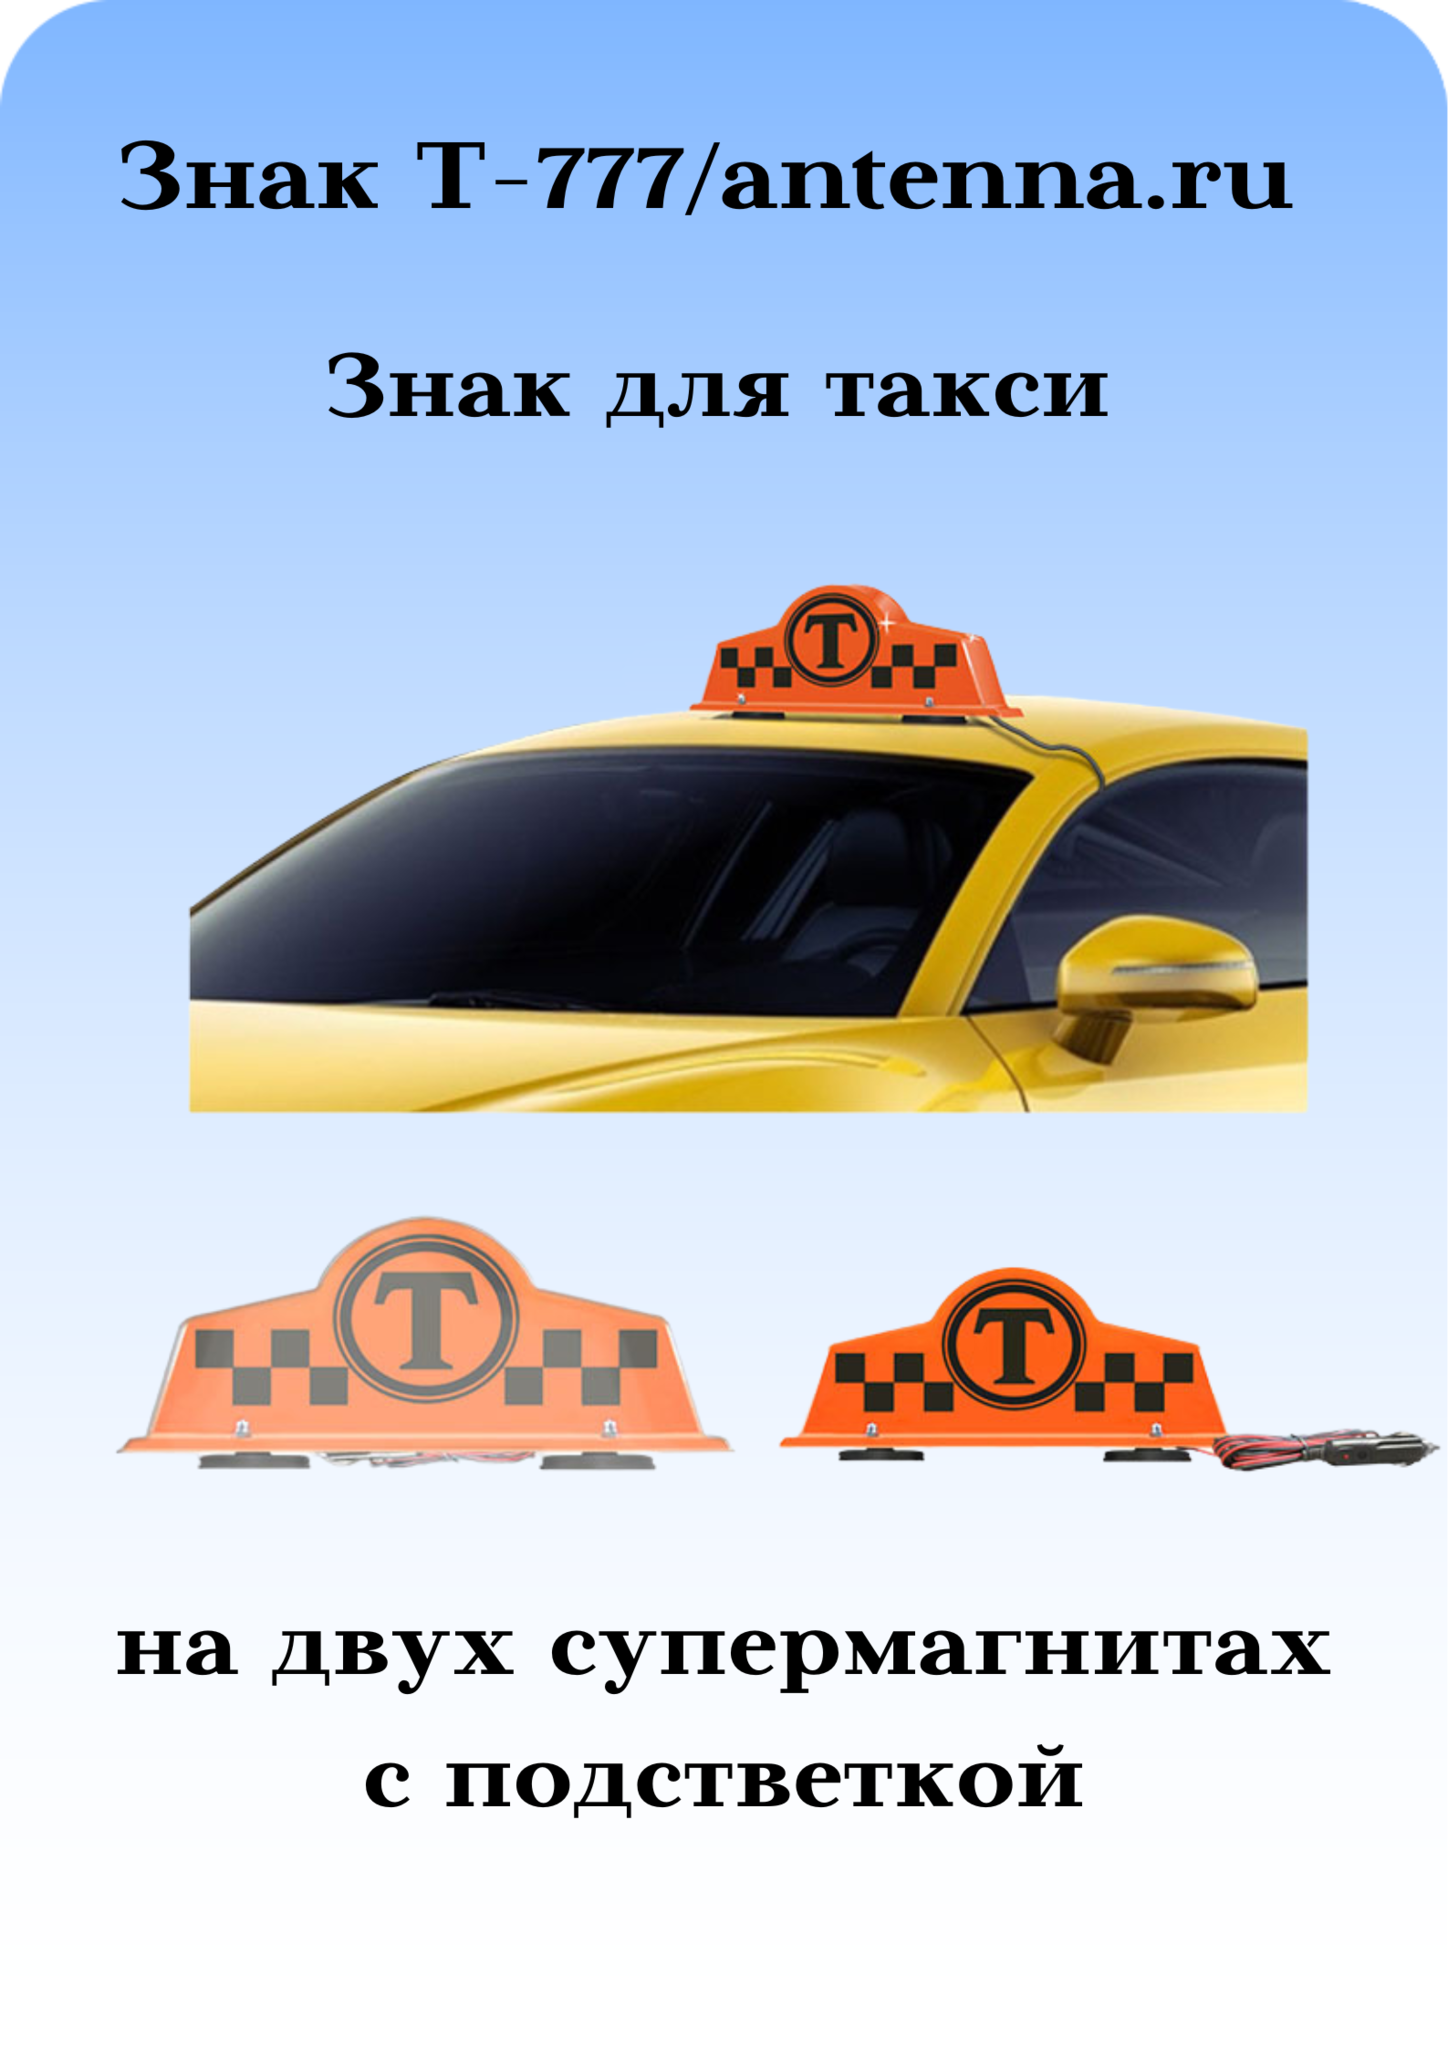 Знак таксомотора: изображения без лицензионных платежей